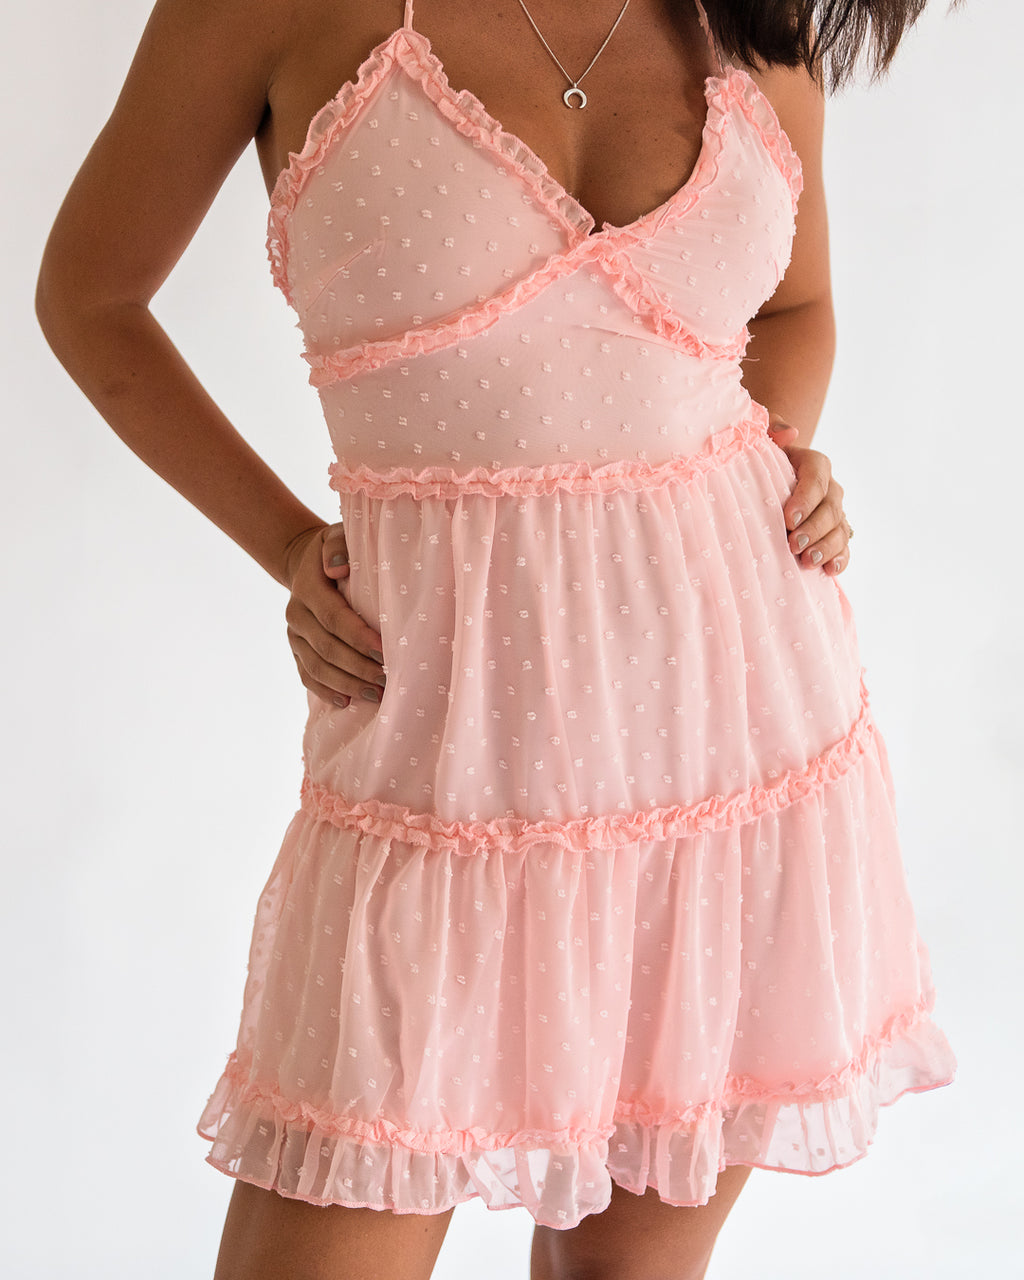 Ava Pink Mini Dress